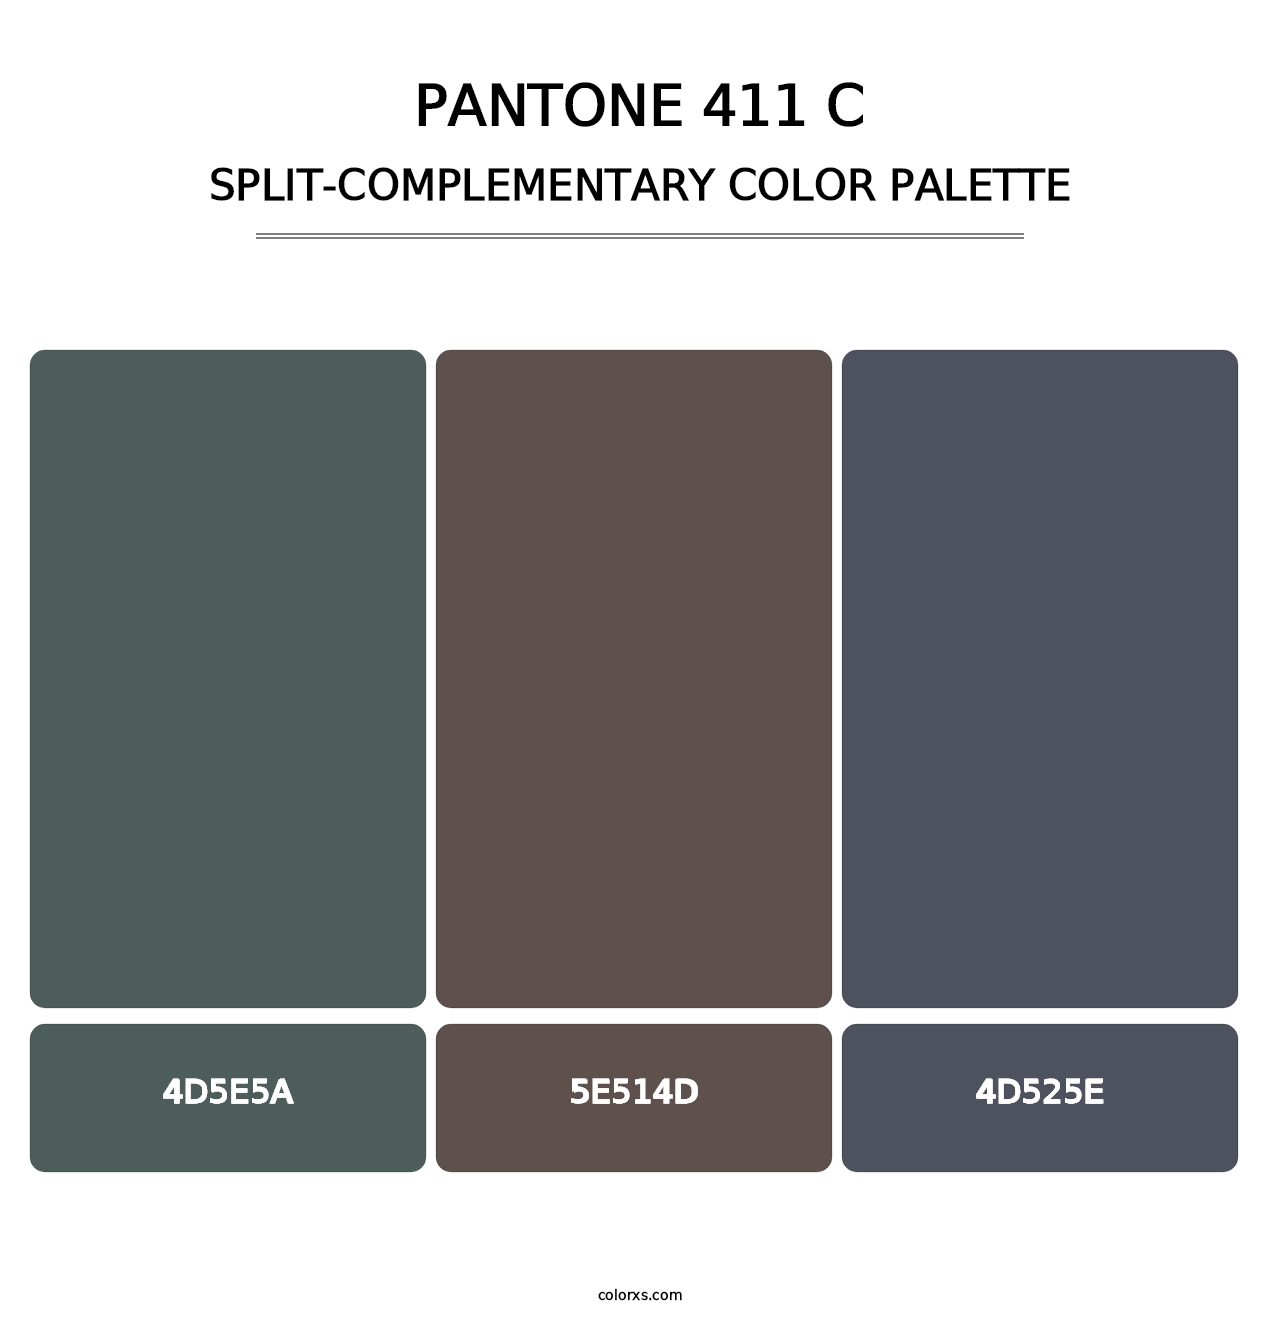 PANTONE 411 C - Split-Complementary Color Palette